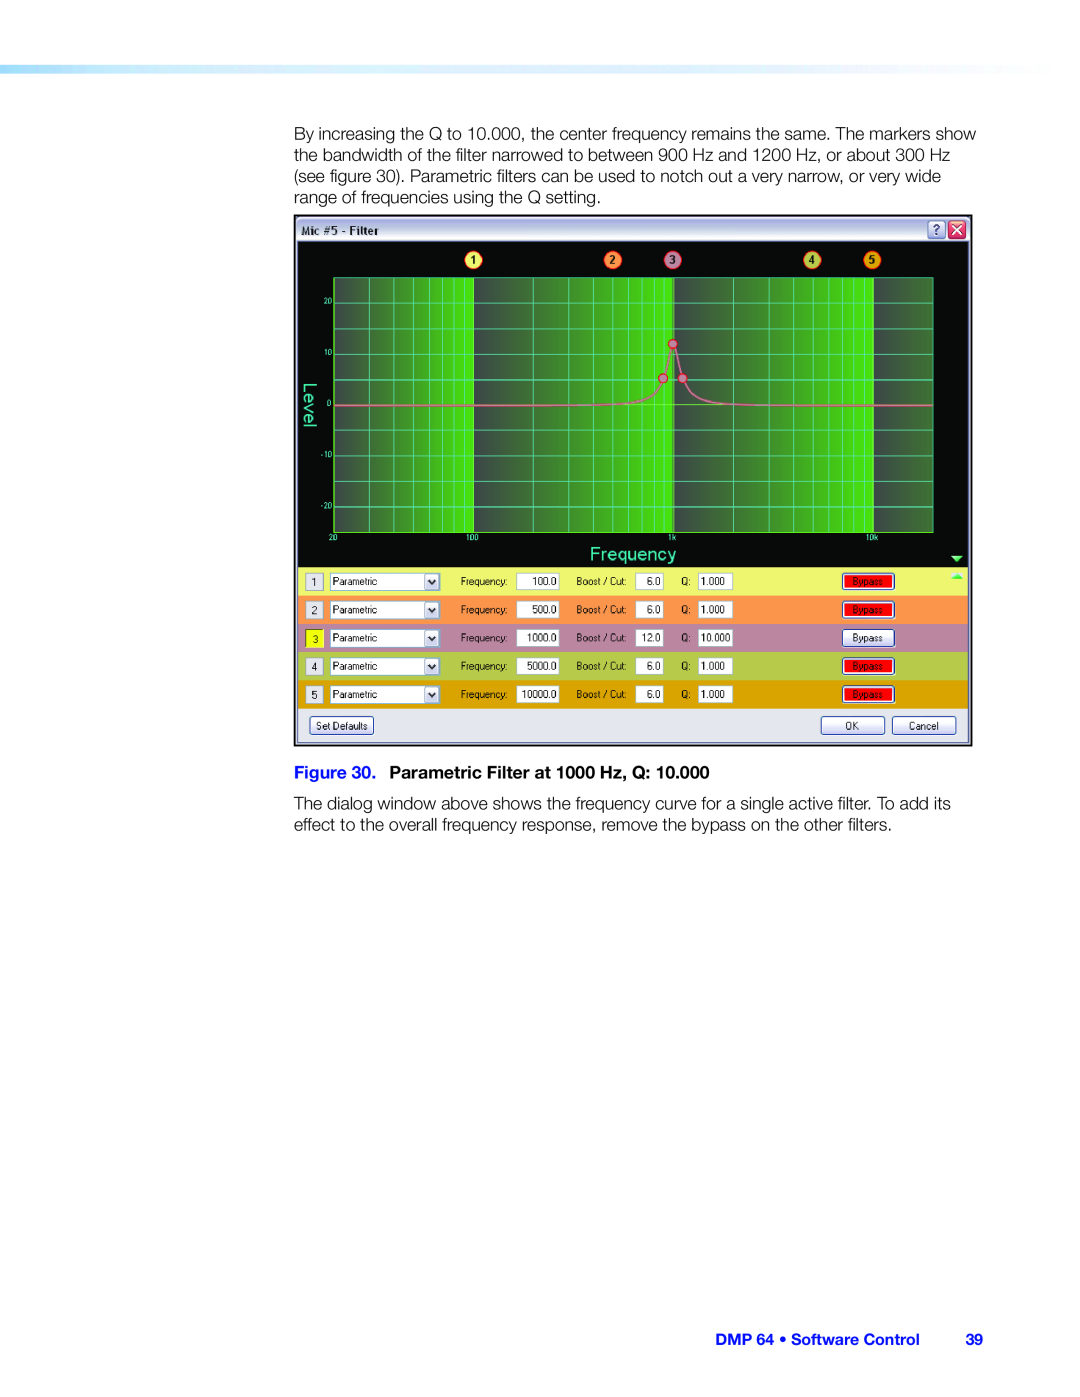 Extron electronic manual Parametric Filter at 1000 Hz, Q, DMP 64 • Software Control 